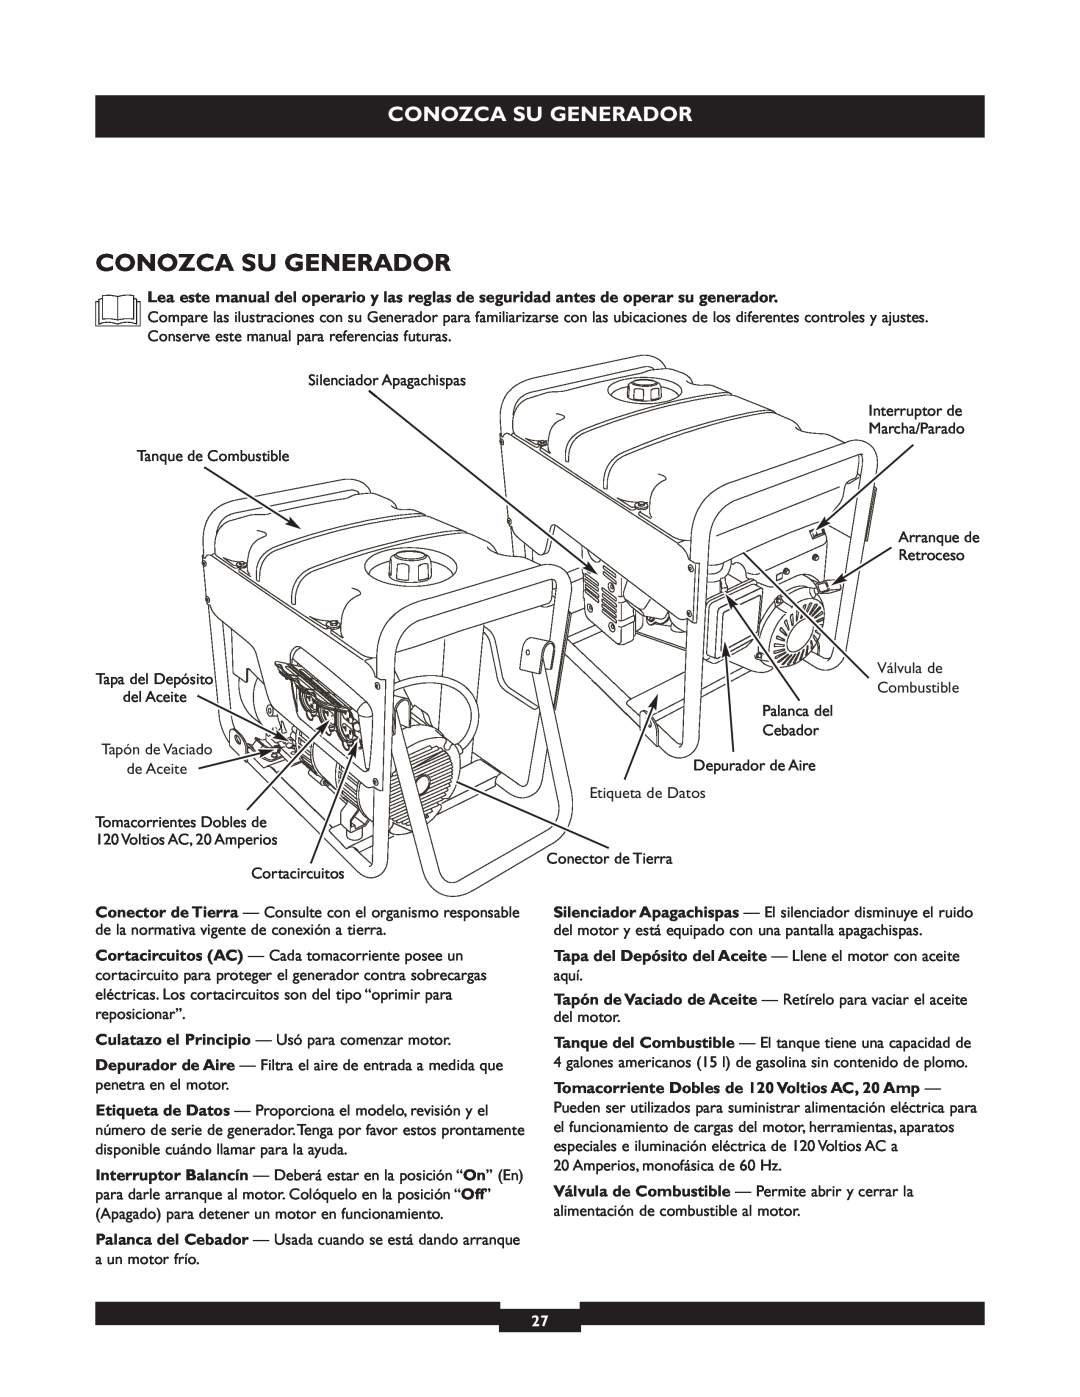 Briggs & Stratton 30219 manual Conozca Su Generador, Tapa del Depósito del Aceite - Llene el motor con aceite 